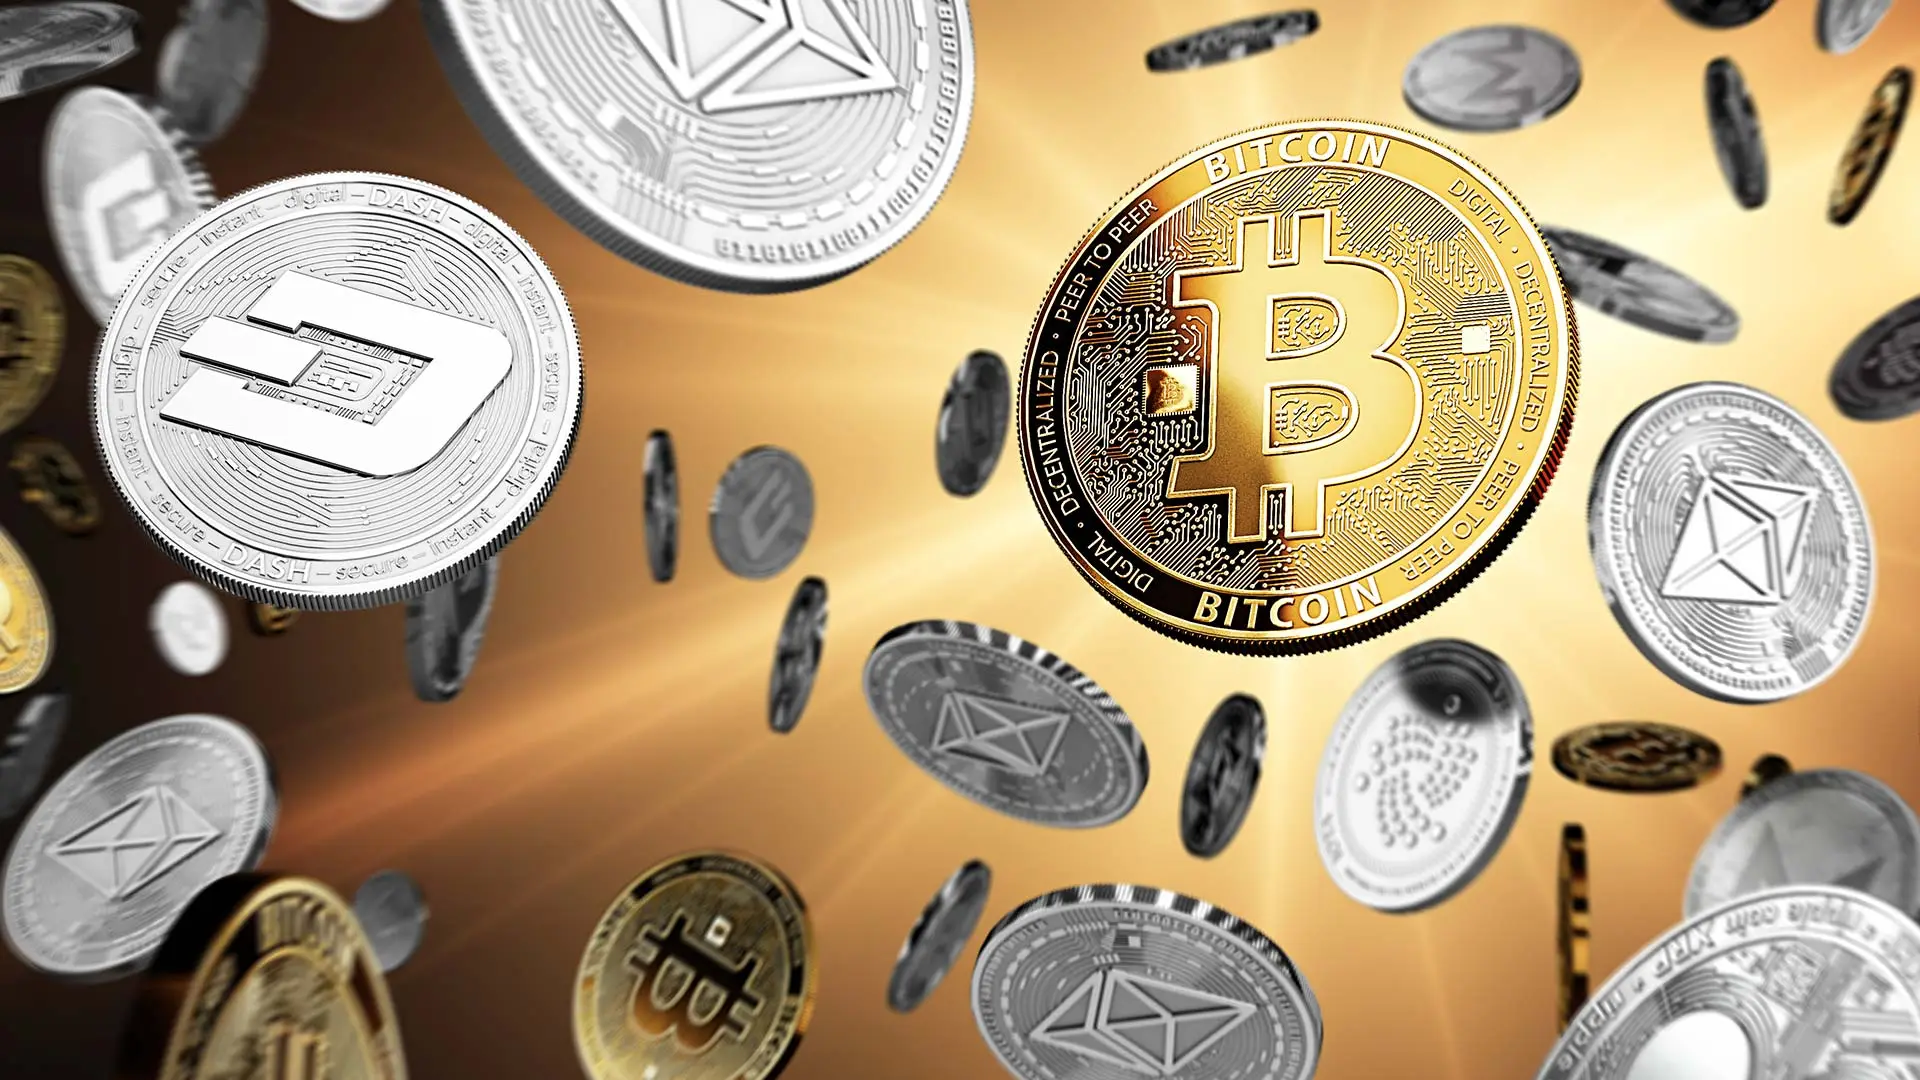 Chef von Kryptobörse verrät: Bitcoin, Ethereum und Co – Diese Coins kaufe ich jetzt selbst (Foto: Nicht-Redaktionell)